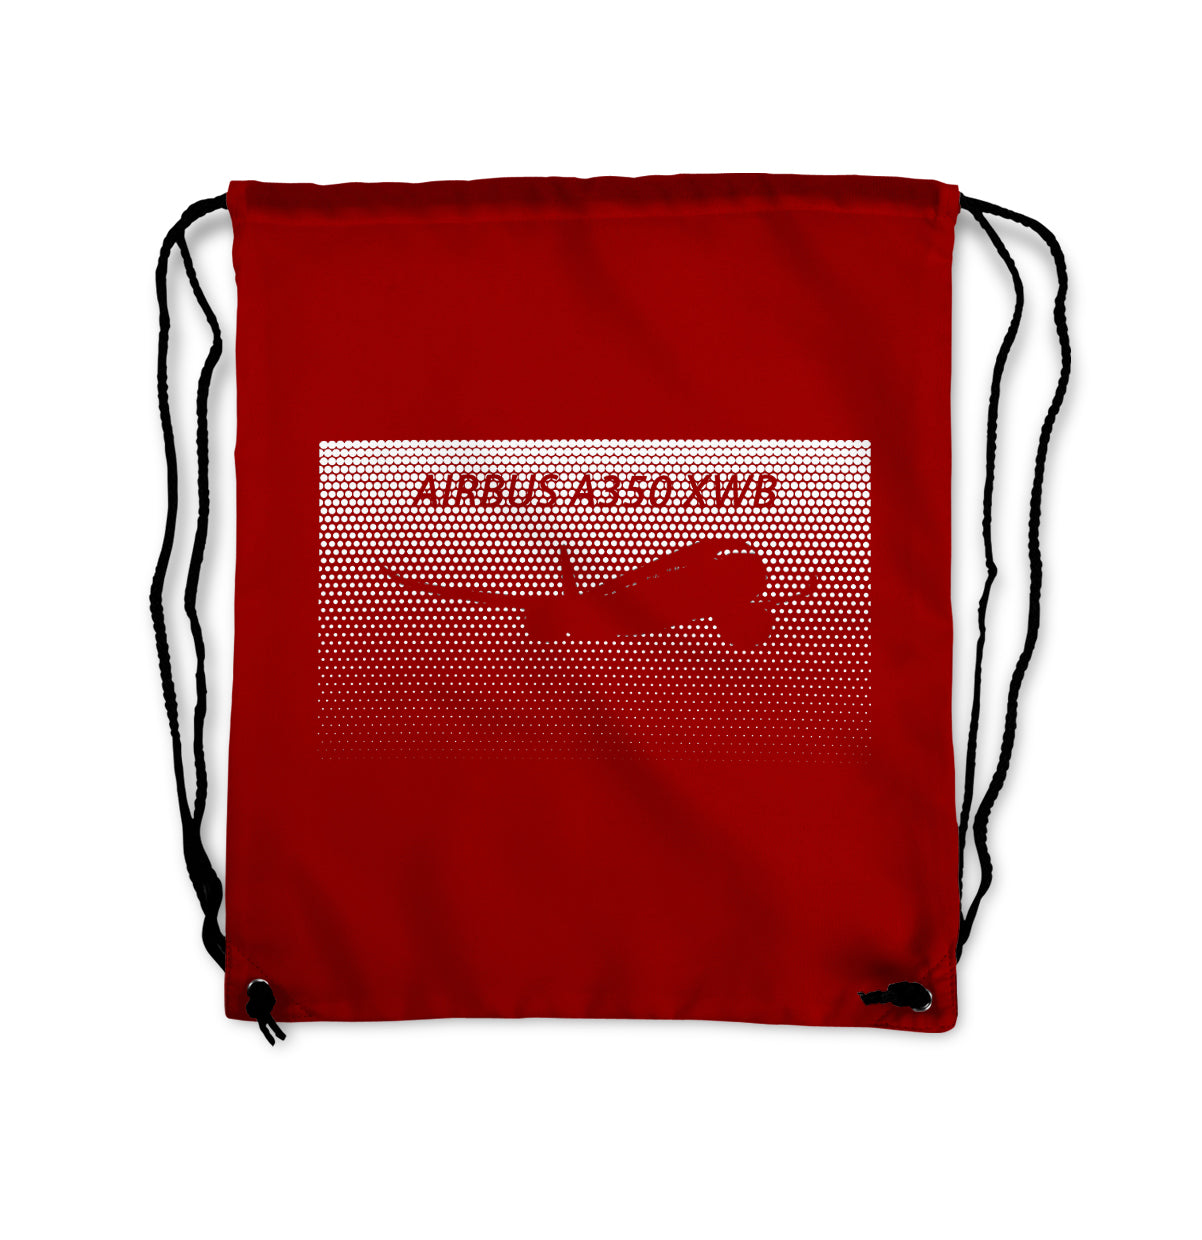 Airbus A350XWB & Dots Designed Drawstring Bags